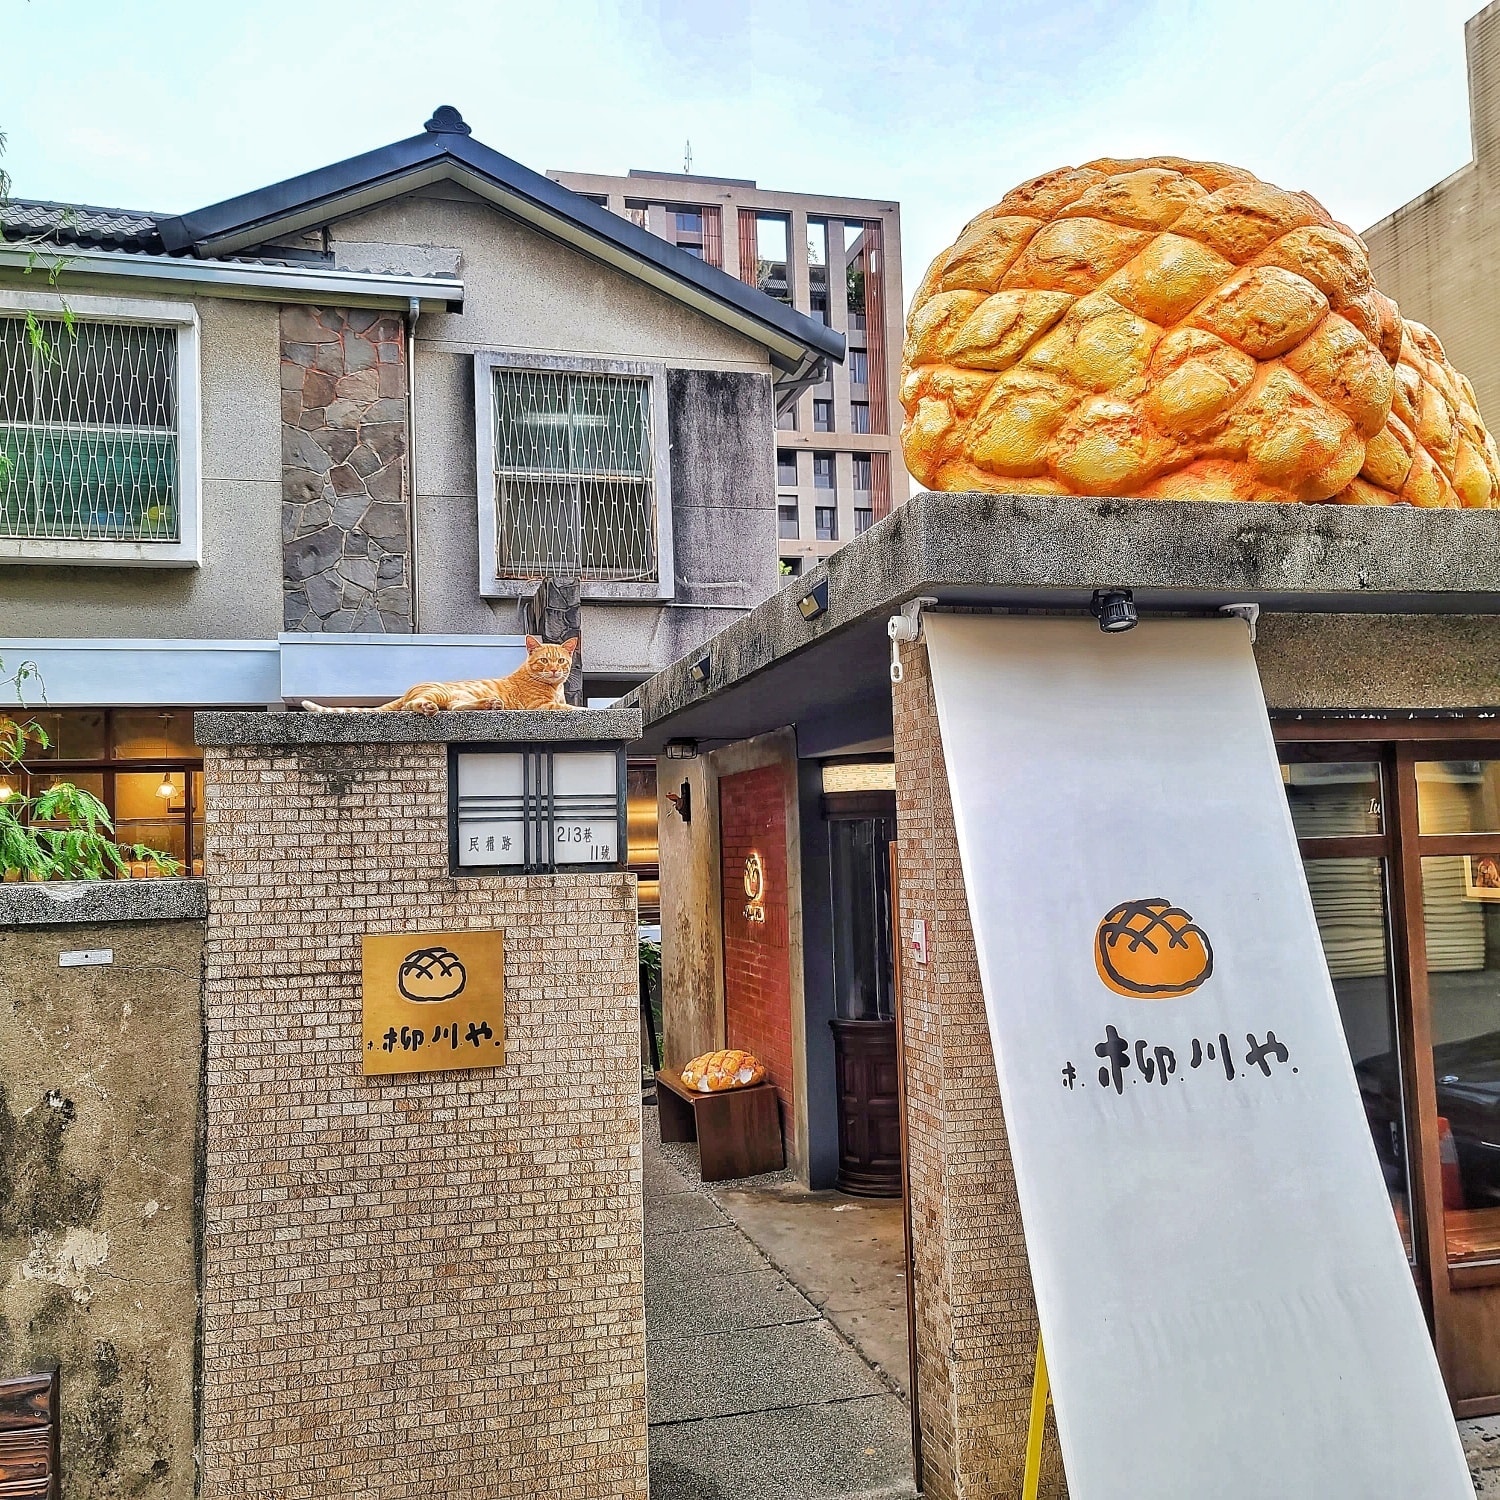 柳川 や｜台中柳川麵包店,巨大菠蘿麵包好吸睛